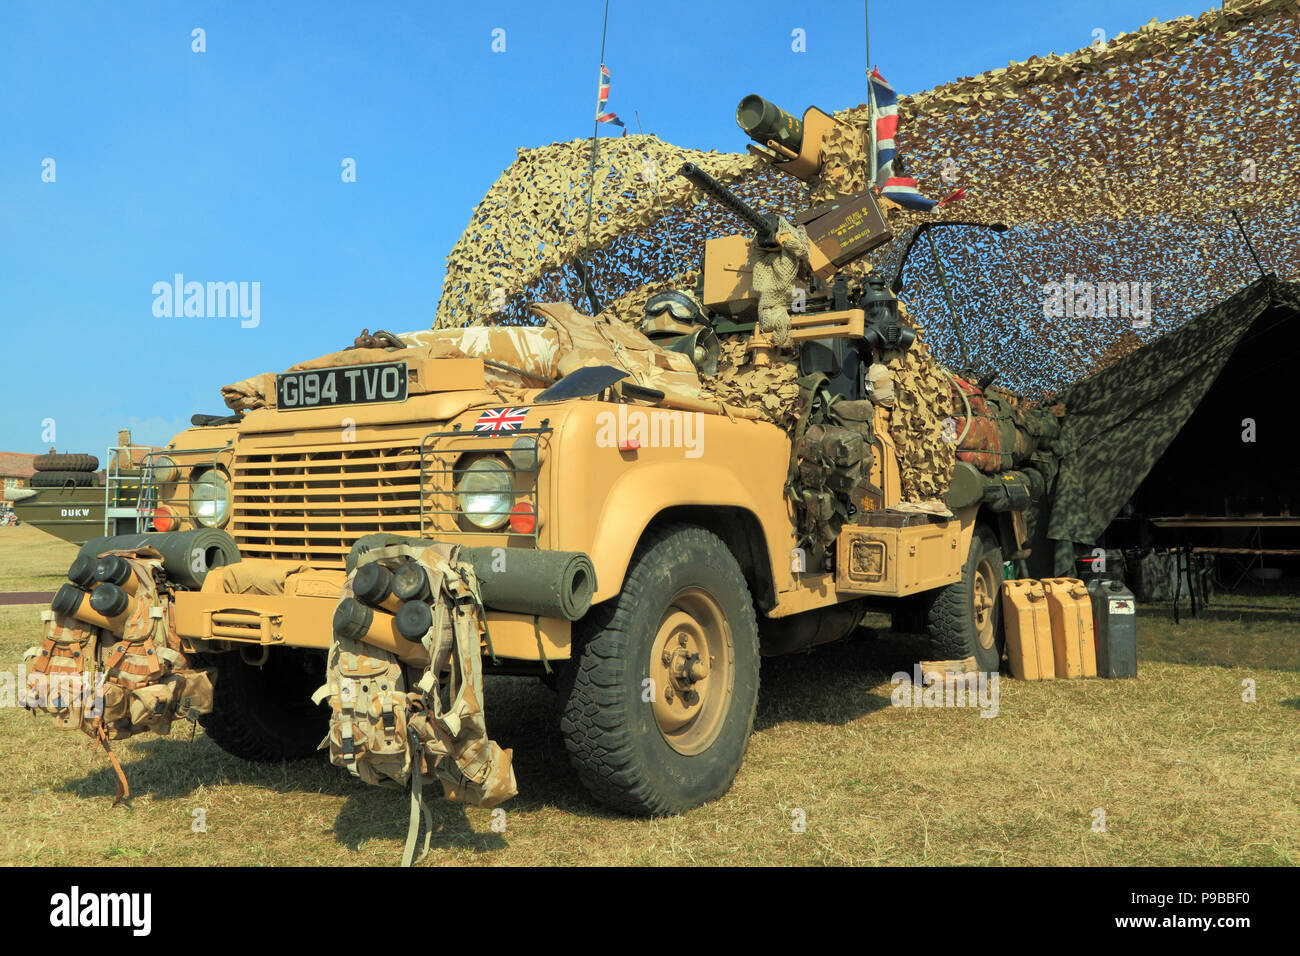 Britische, 1980er Jahre, militärisches Fahrzeug, Jeep, Vintage, britische Armee, Camouflage Netting, Zelt, wie in Afghanistan Krieg diente Stockfoto